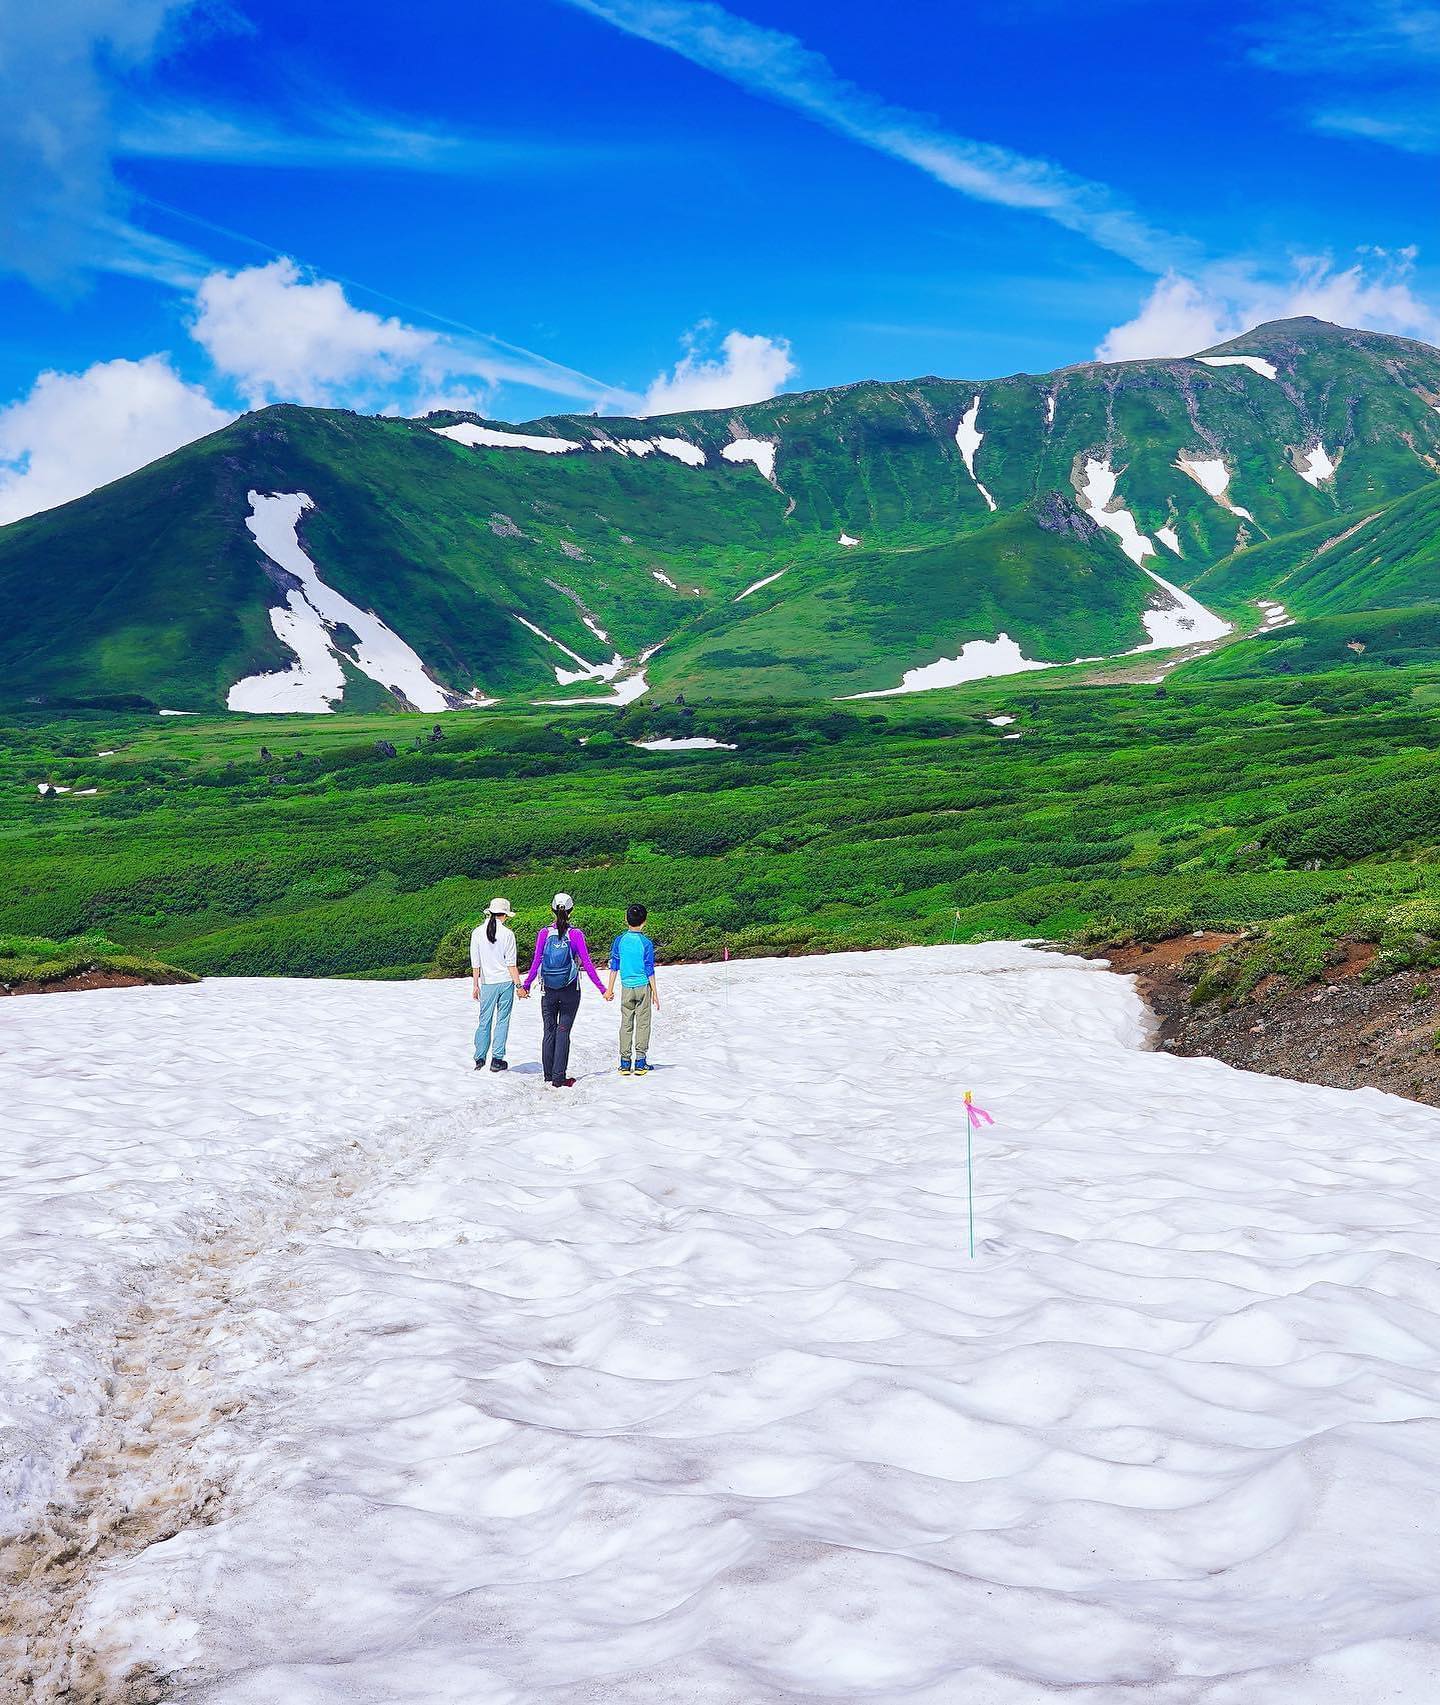 🇯🇵【北海道Hokkaido】大雪山
🏔️北海道著名的大雪山國家公園，夏季翠綠山頭點綴白雪，是非常著名的北海道登山健行首選處
🚠搭纜車可輕易從旭岳登山口出發，許多不同健行路線，從登山新手到進階都可以享受樂趣
👨‍👩‍👧家庭旅行TIP: 如圖可以在健行途中，體驗走在幾小段大雪山終年不化的雪上，輕鬆欣賞壯闊美景，還有野花，湖泊等美景可欣賞。最經典簡單路線只要一小時多就可完成

#japan #hokkaido #daisetsuzan #北海道 #大雪山 #旭岳 #把世界當教室🌍 #日本夏季絕景 #牽手照系列👫 #travelwithmikeanna